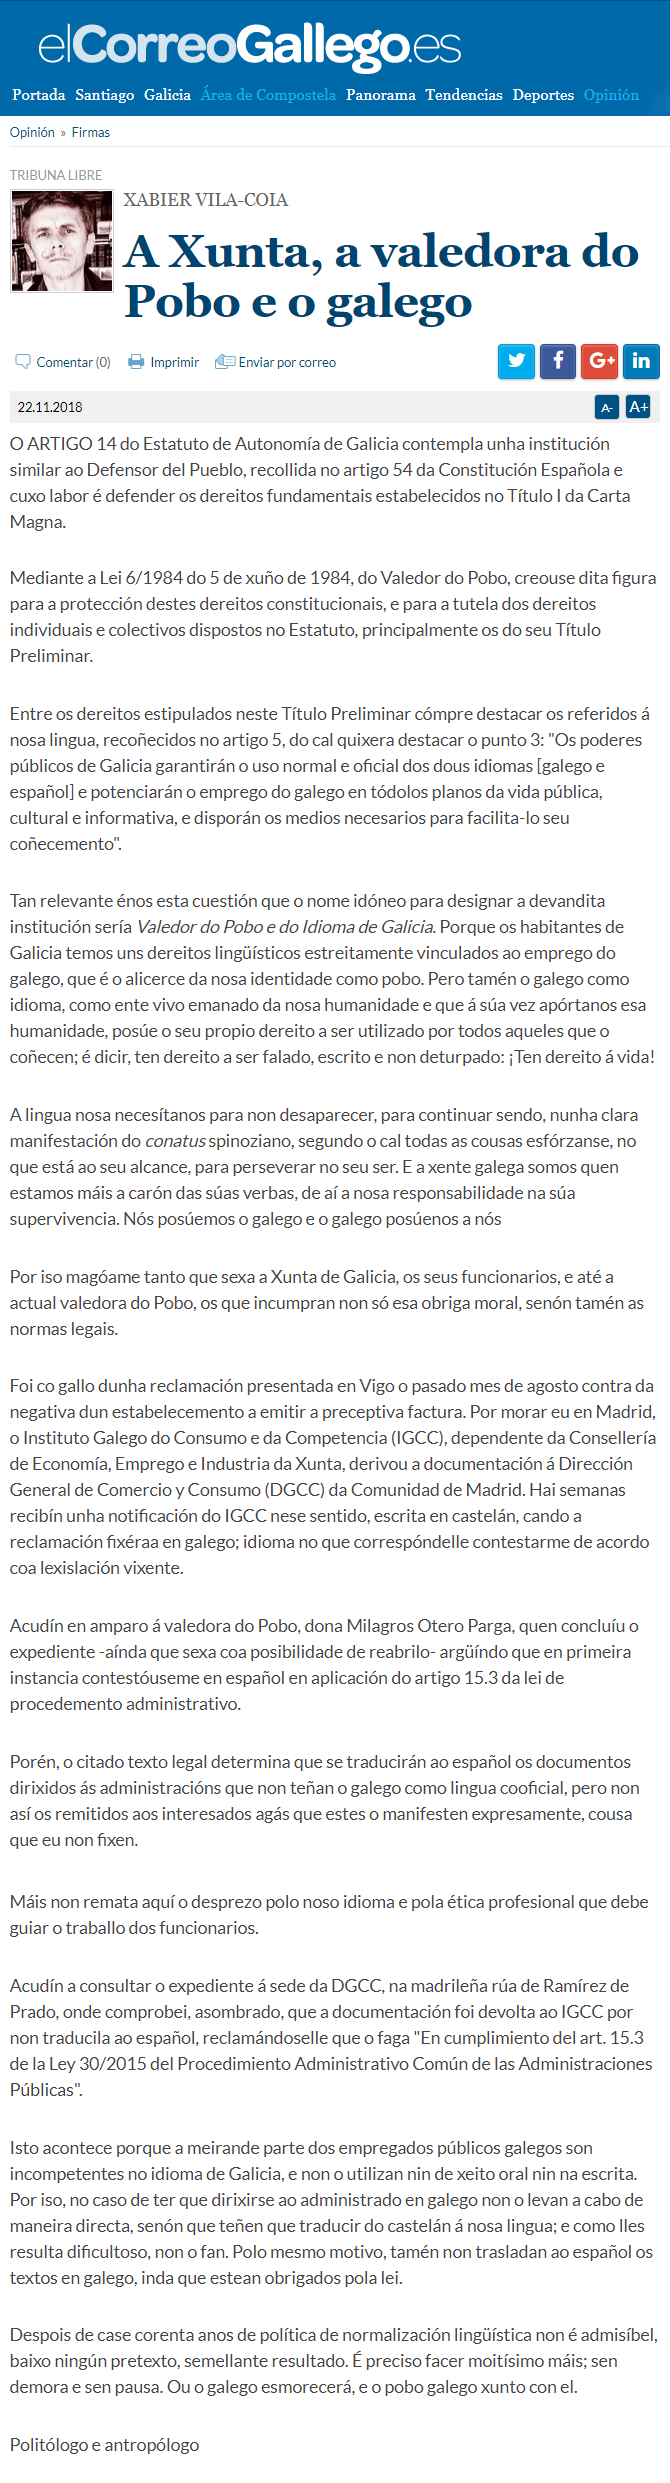 Artigo de Xabier Vila-Coia publicado en El Correo Gallego o 22 de novembro de 2018, titulado "A Xunta, a Valedora do Pobo e o galego".